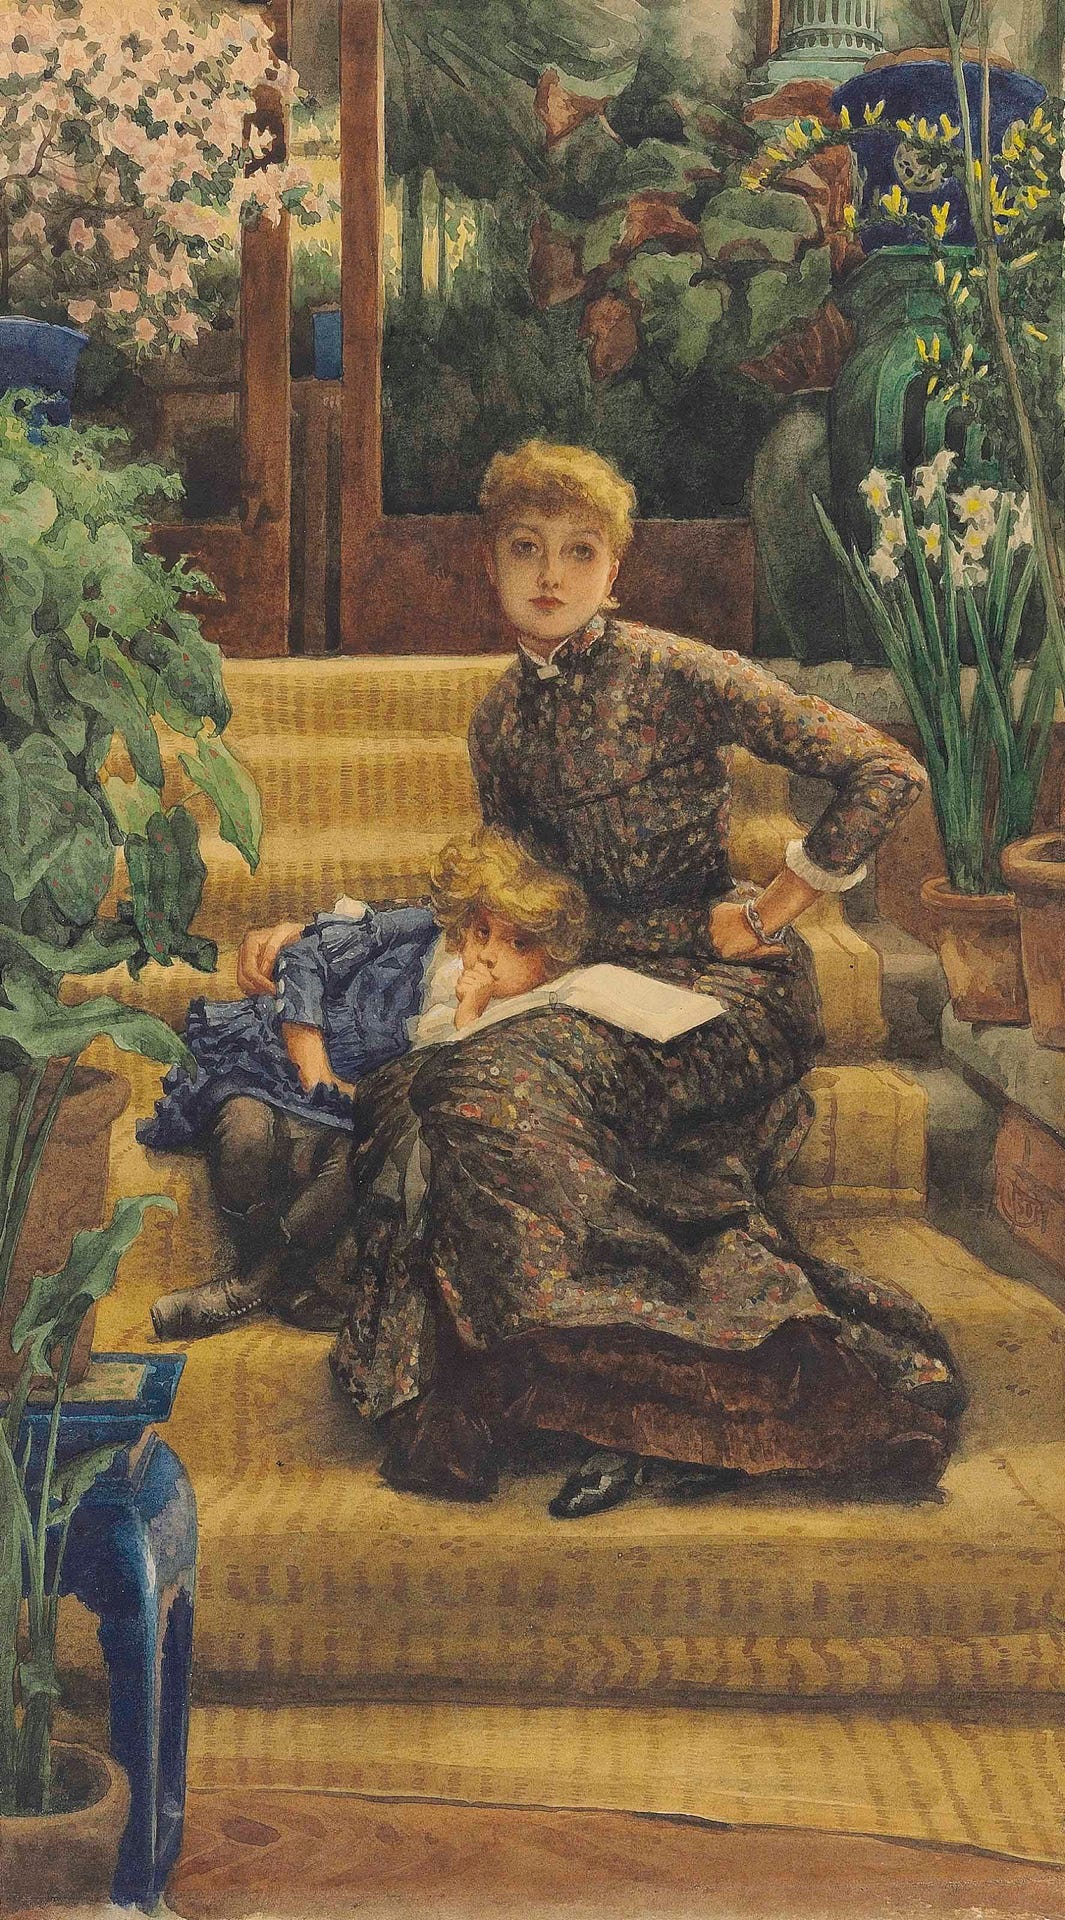 La Soeur Ainée (The Elder Sister) (1880s) by James Tissot